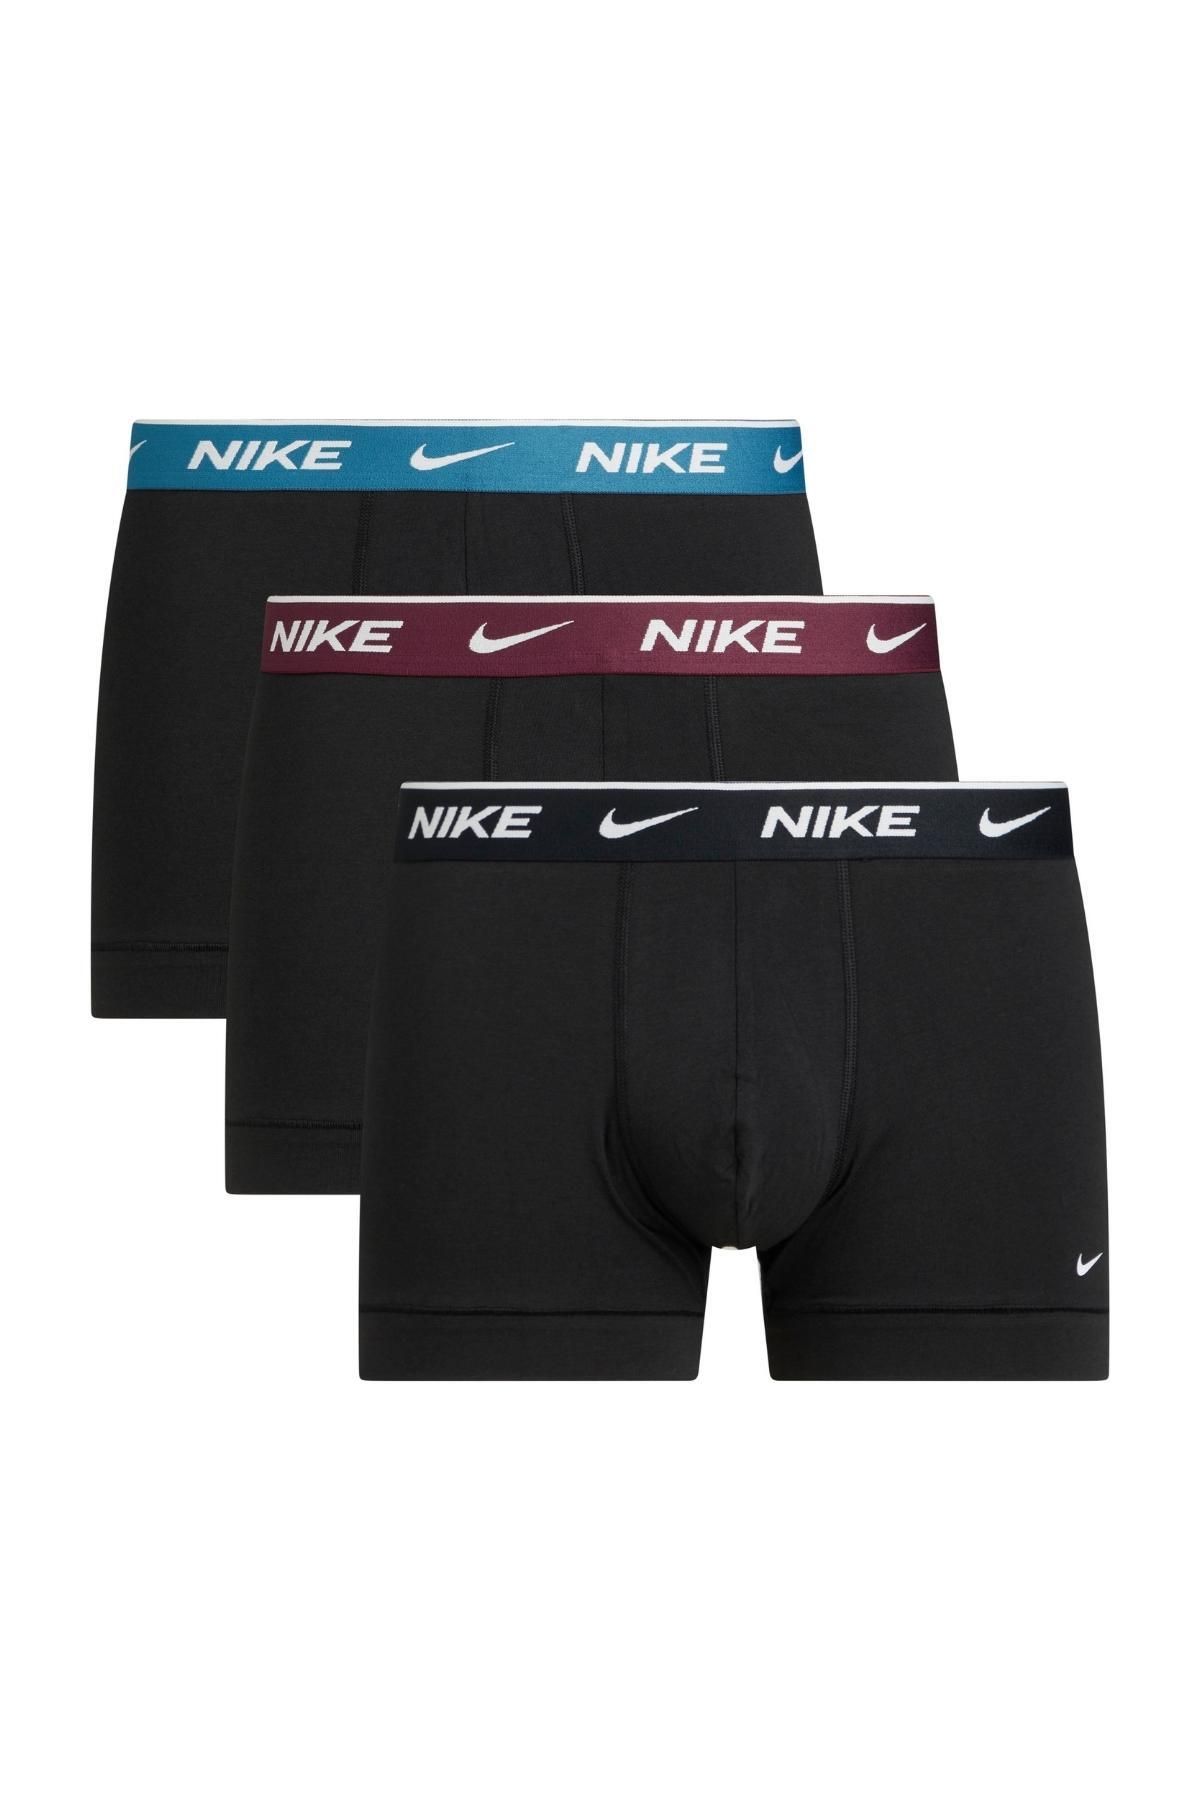 Nike Erkek Nike Marka Logolu Elastik Bantlı Günlük Kullanıma Uygun Siyah Boxer 0000ke1008-hwx